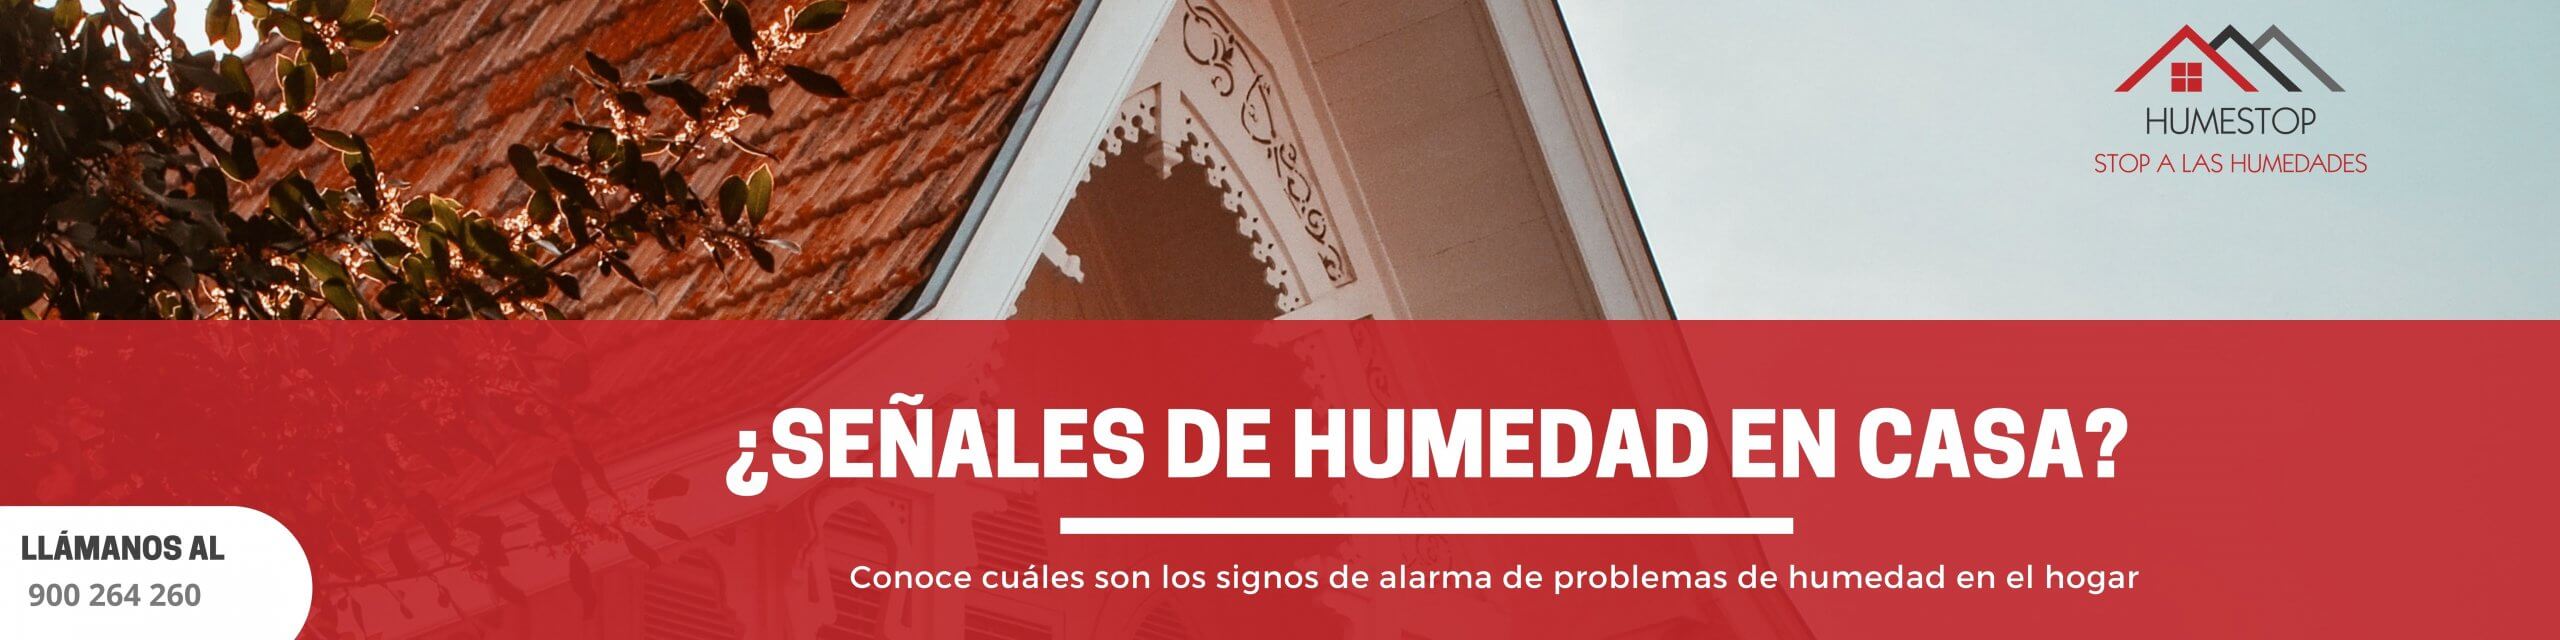 SEÑALES DE HUMEDAD EN CASA